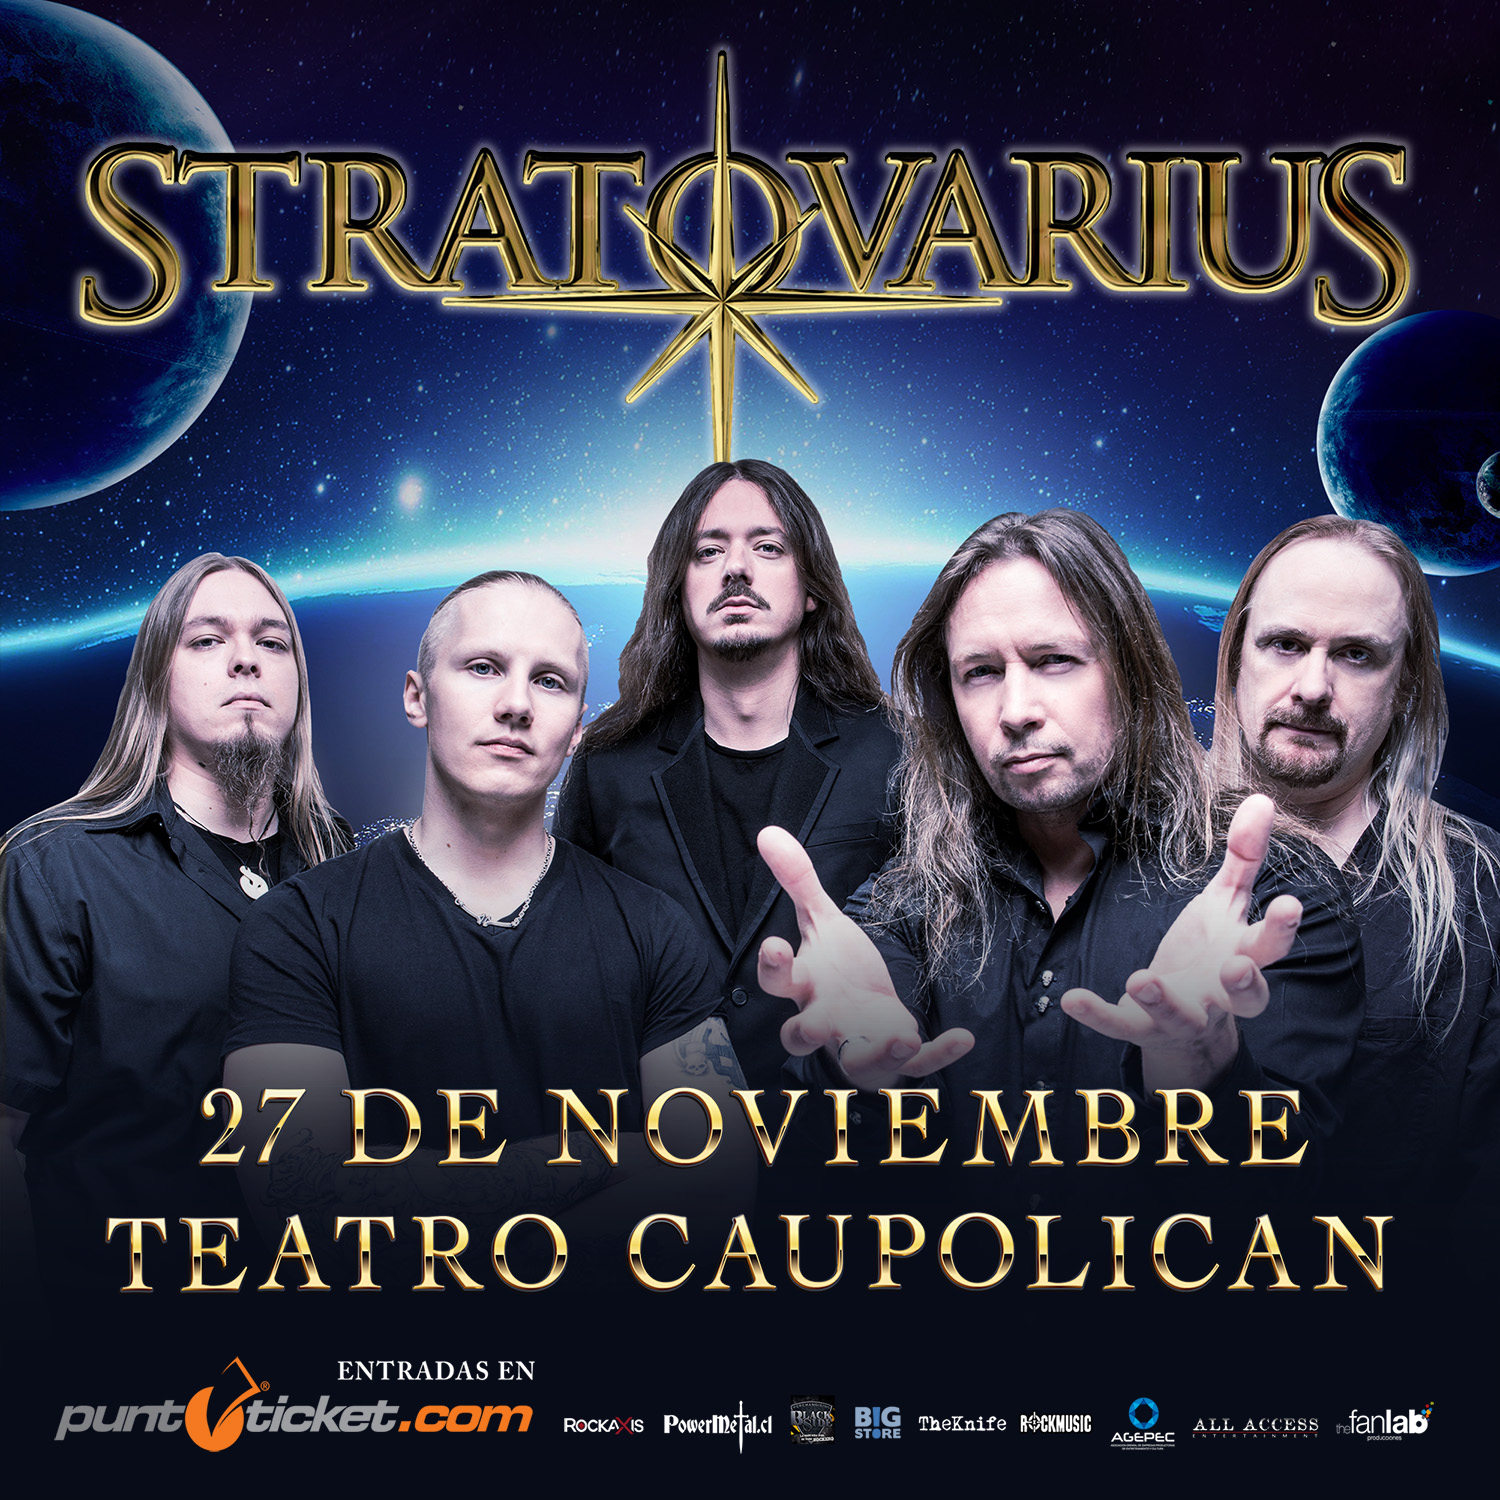 Confirmado: los finlandeses de Stratovarius regresan a Chile